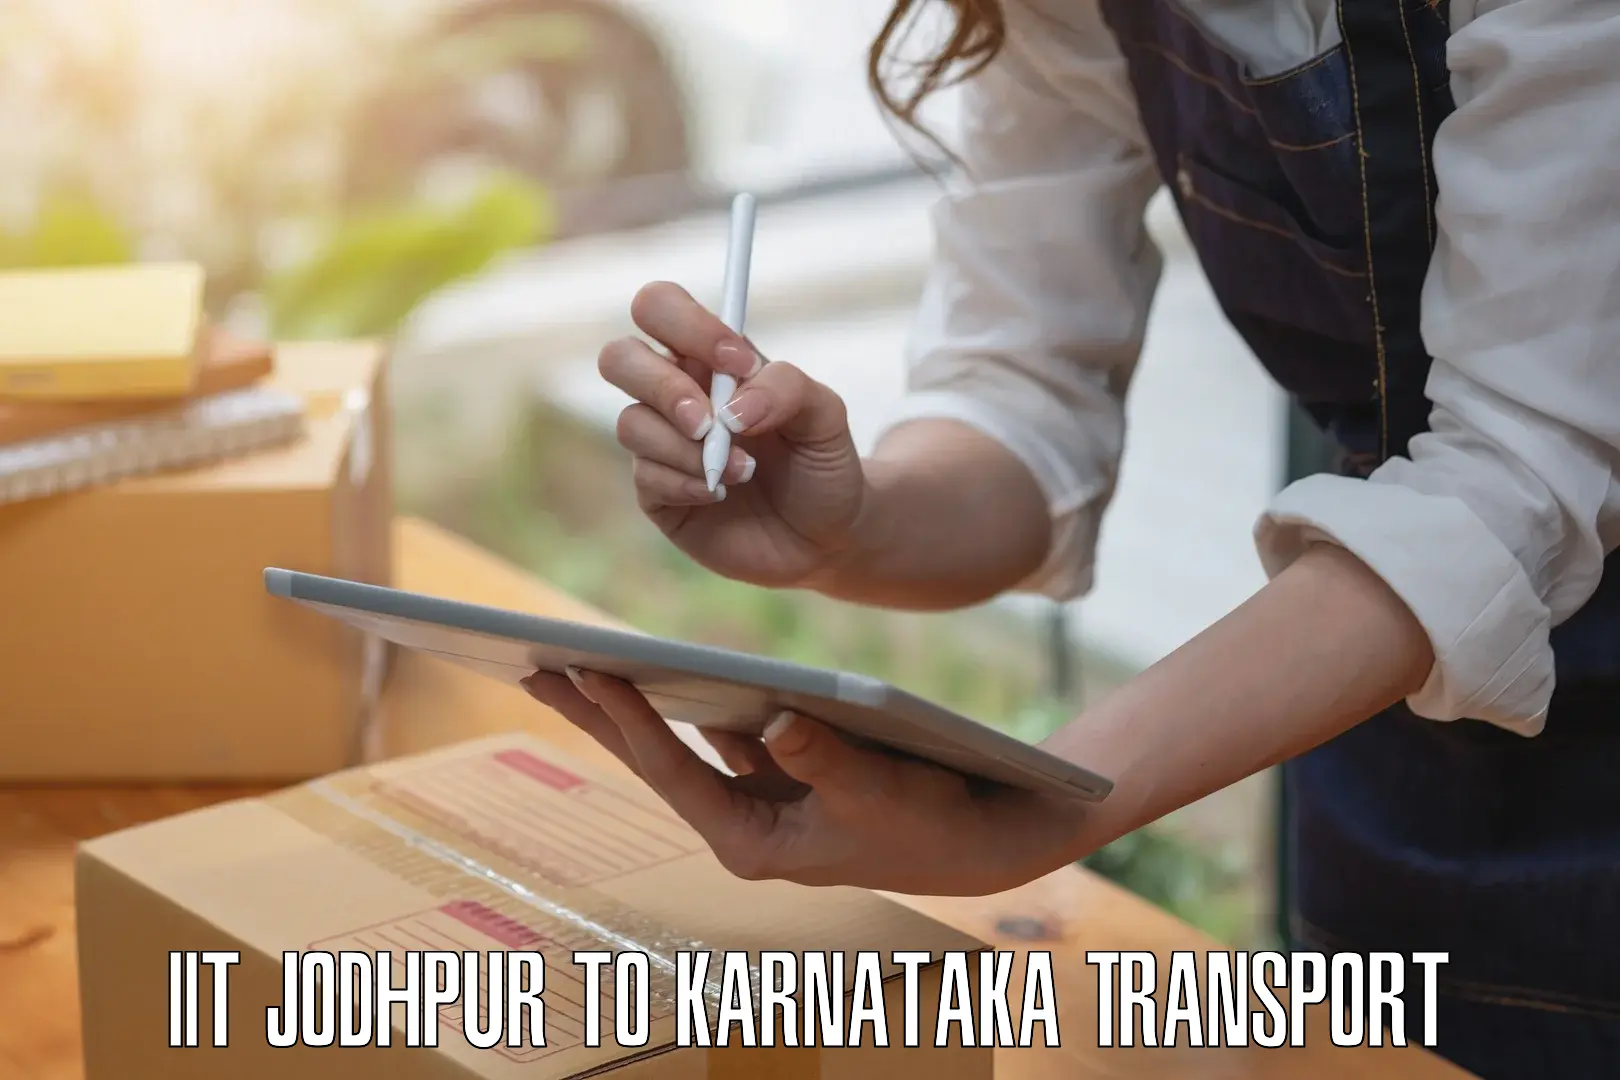 Nearest transport service IIT Jodhpur to Kolar